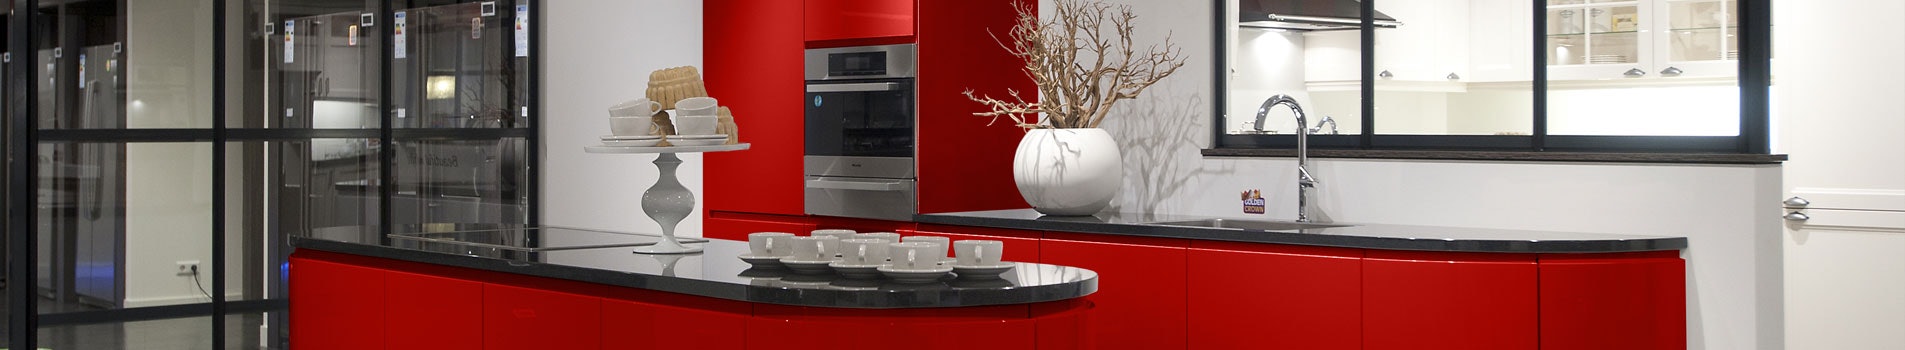 Rode hoogglans design keuken